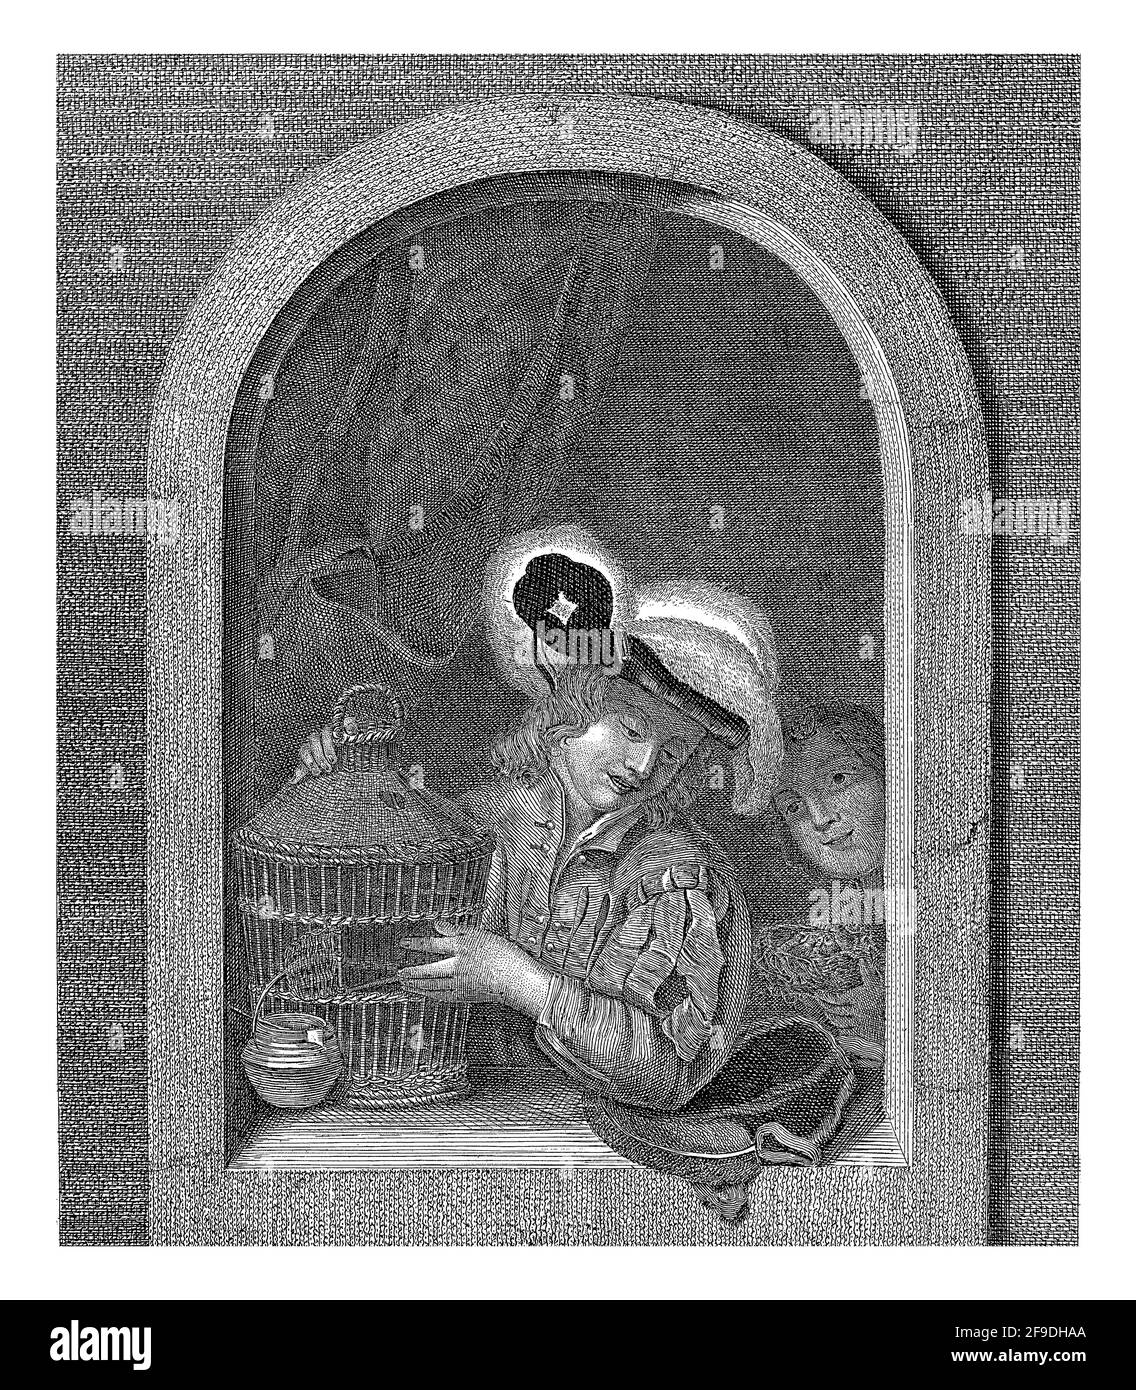 Un garçon avec une cage à oiseaux vide tourna la tête vers le deuxième garçon avec un nid d'oiseau dans la fenêtre. Banque D'Images